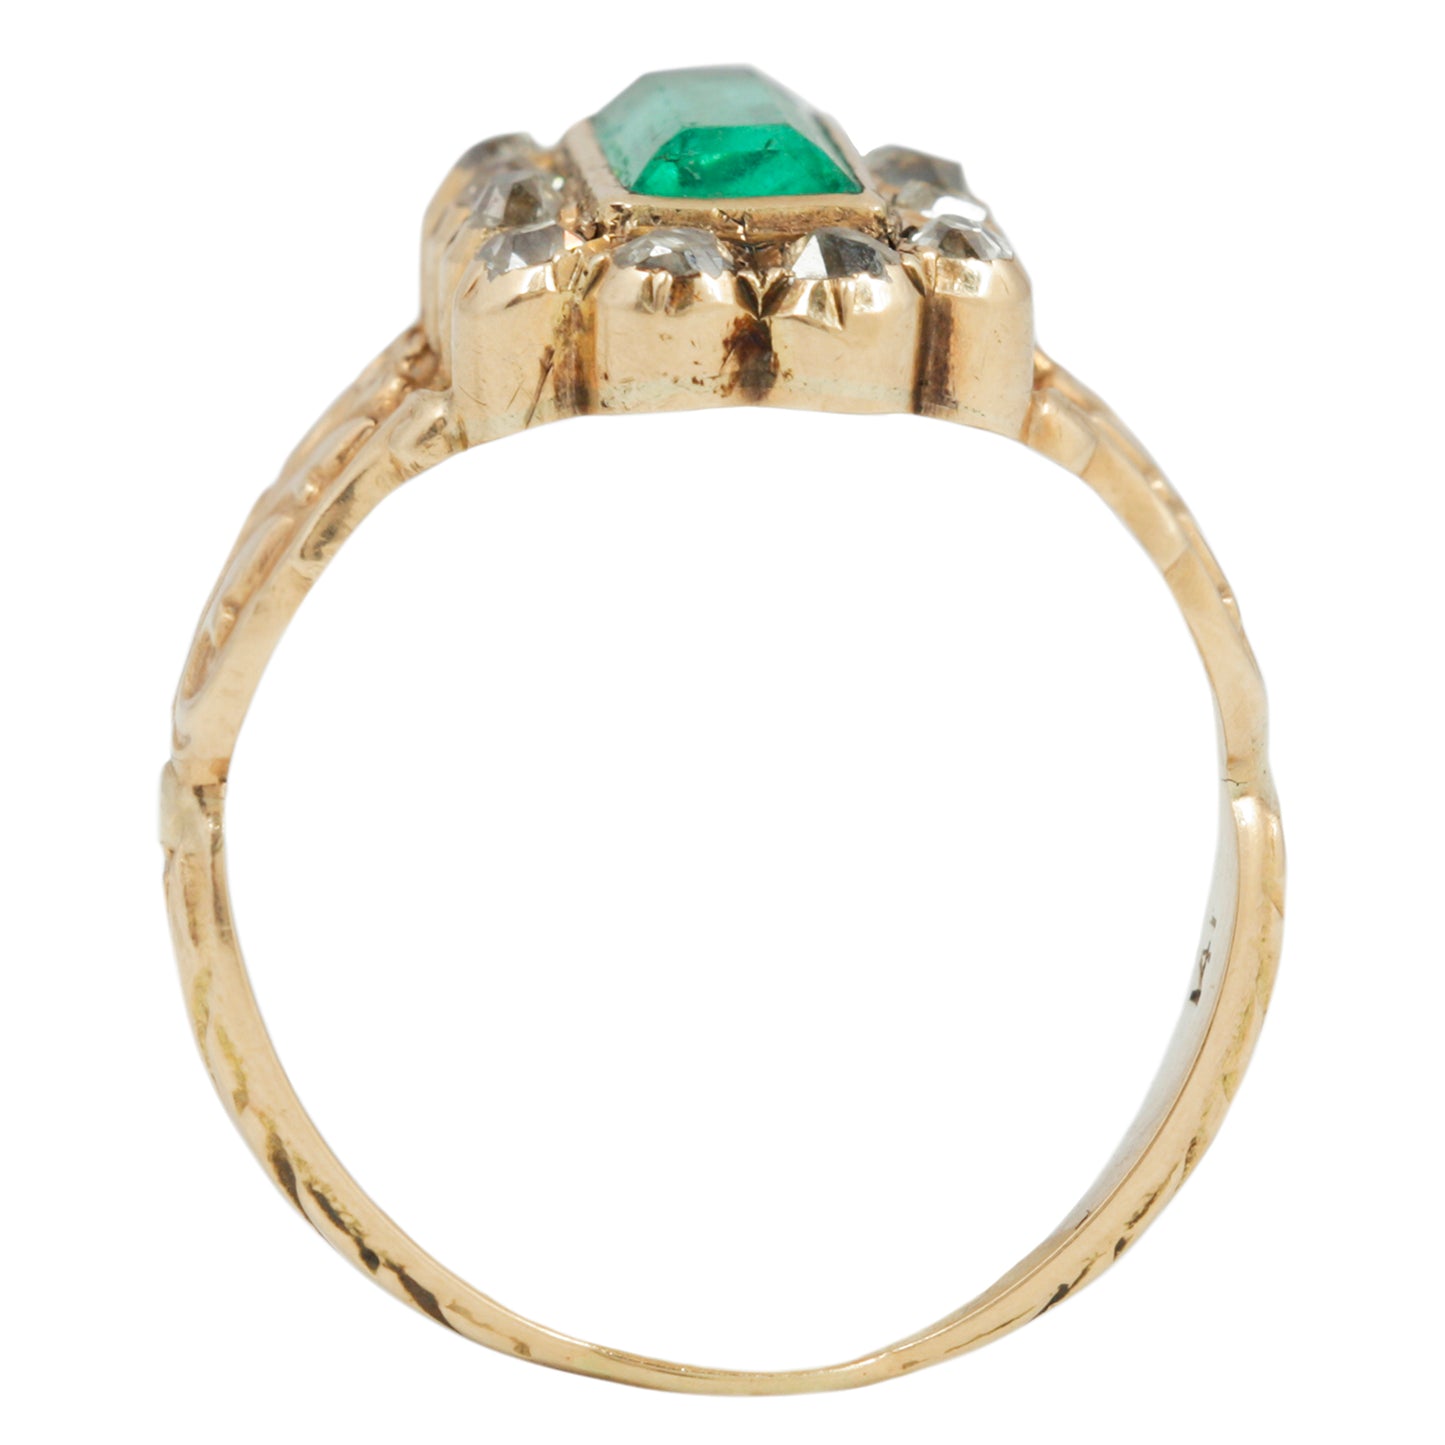 Georgian Emerald Halo Ring